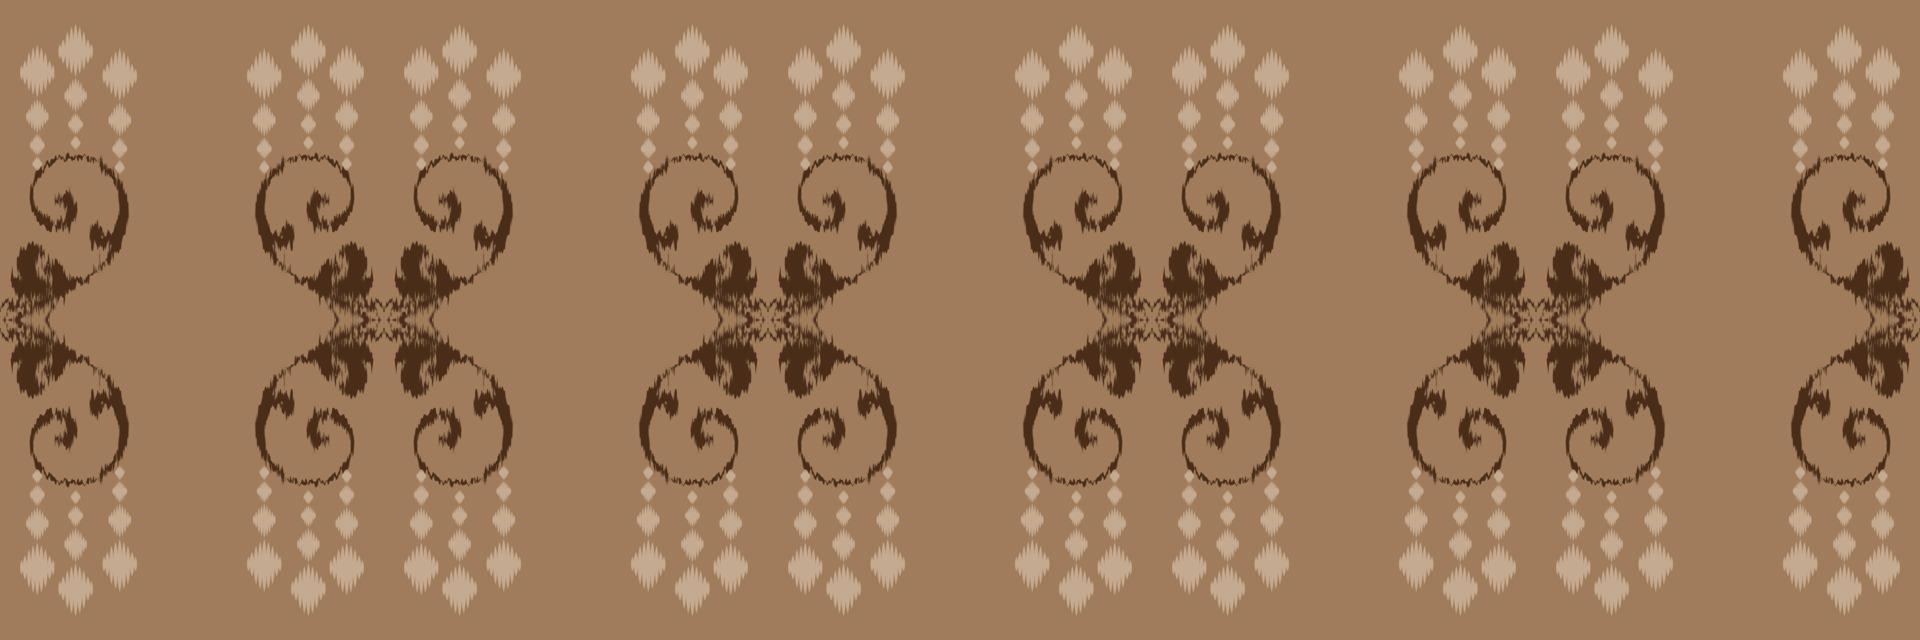 ikat gallone batik tessile senza soluzione di continuità modello digitale vettore design per Stampa saree Kurti Borneo tessuto confine spazzola simboli campioni progettista